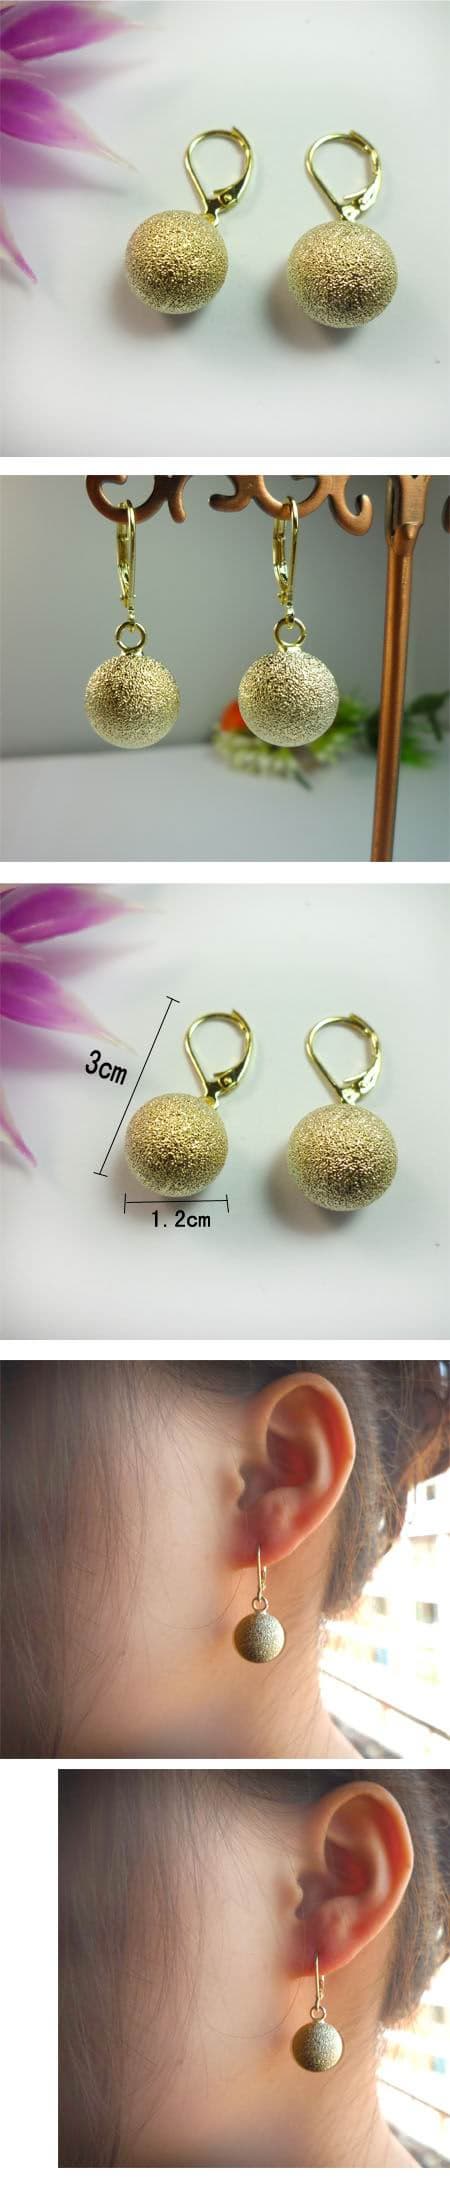 Women's Style Gold Bead Pierced Earrings